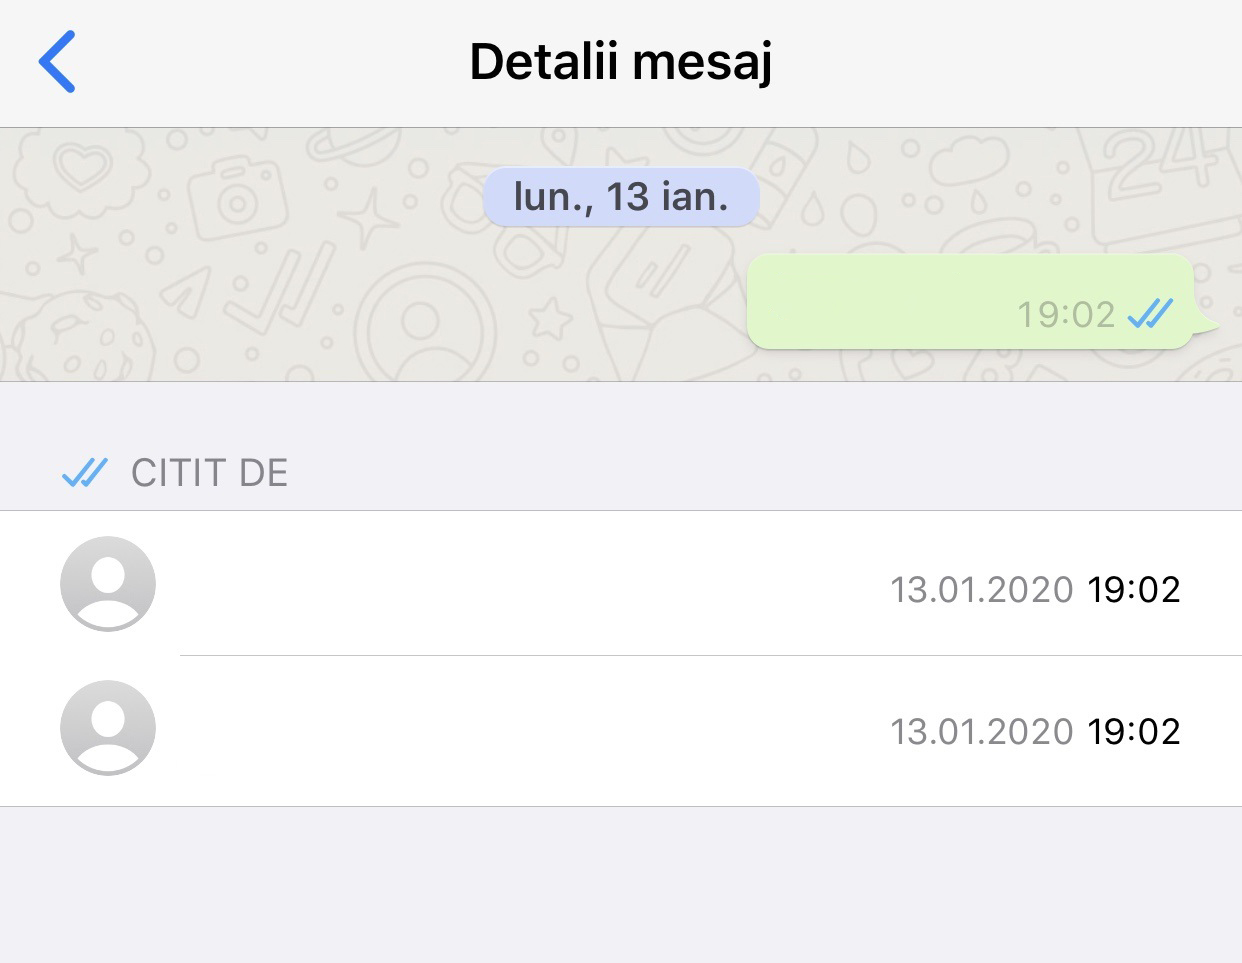 confirmations de lecture des messages du groupe WhatsApp